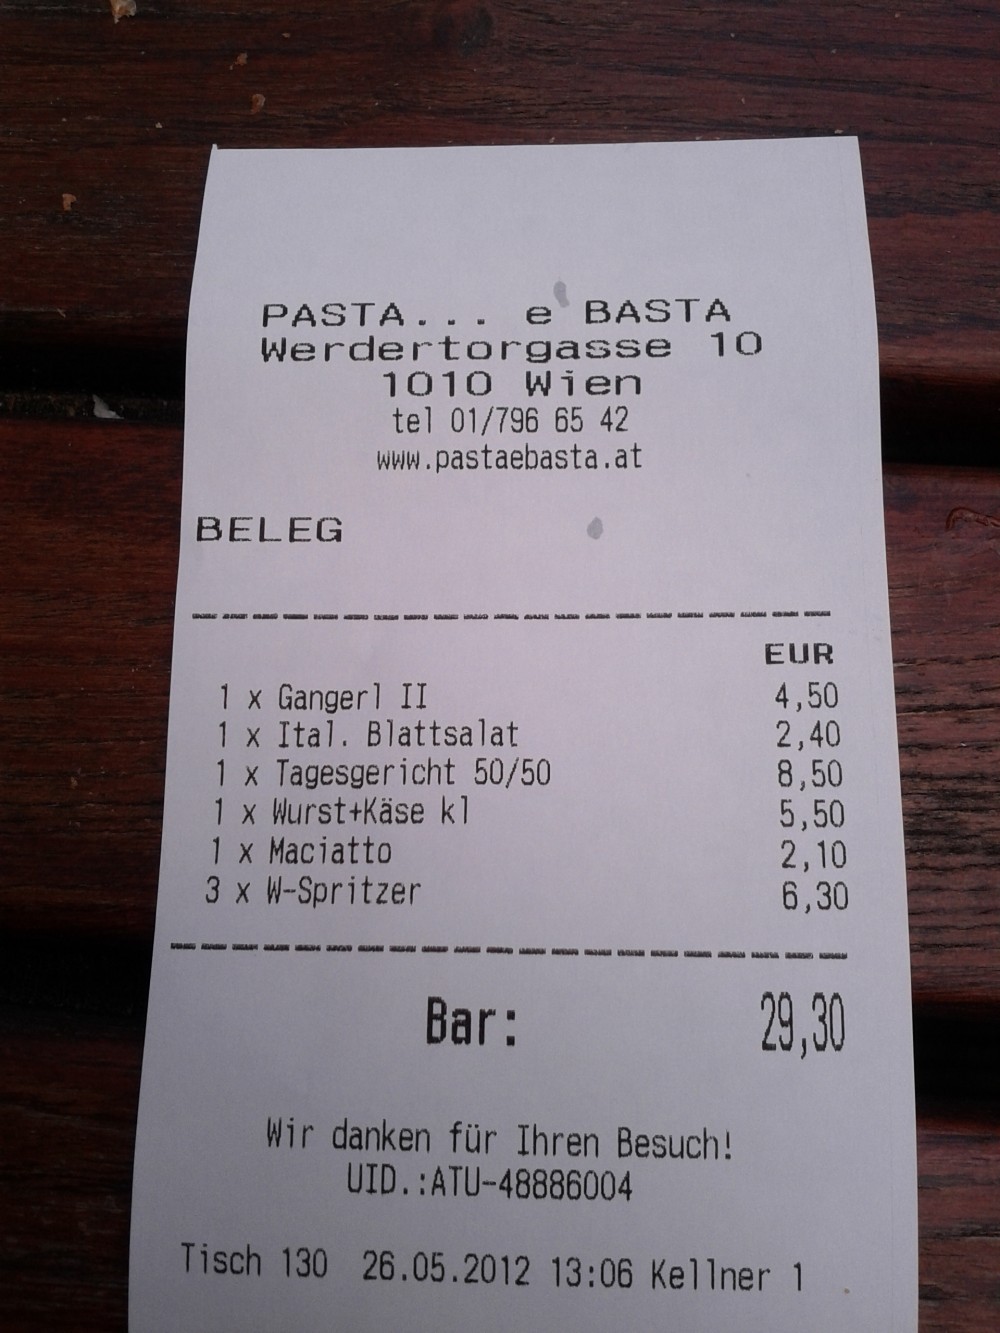 Rechnung für 2 Personen... "Gangerl" ist eine halbe Hauptspeise und "50/50" ... - Pasta... e Basta - Wien